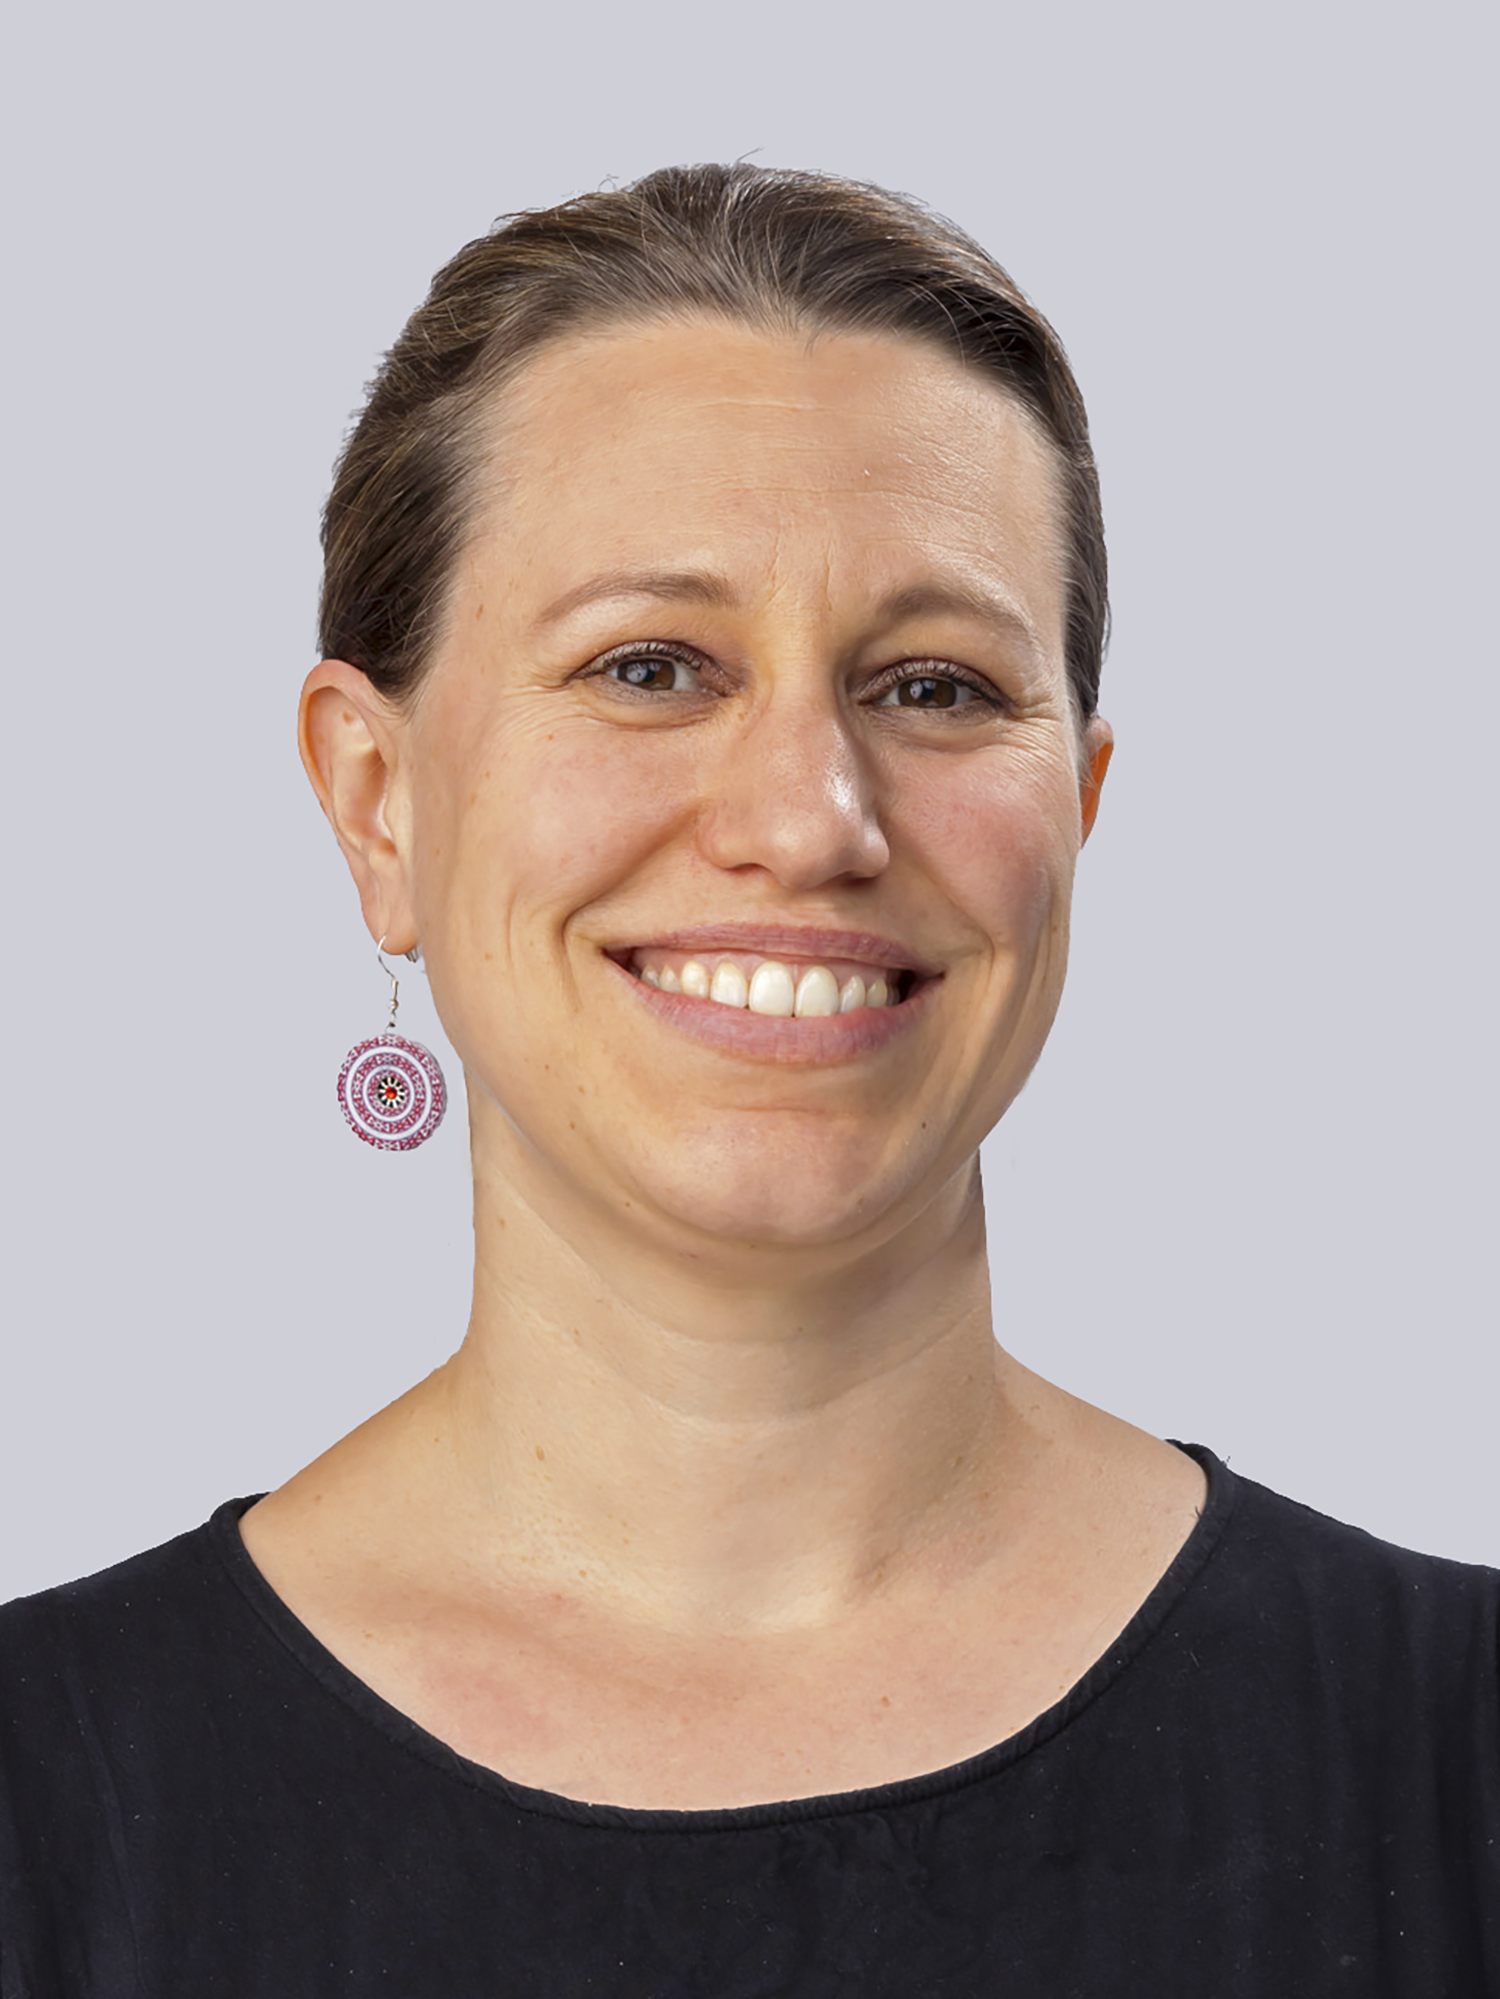 Mehr Frauen in der Wissenschaft: Kathrin Blumenstein für „Margarete von Wrangell-Programm“ ausgewählt